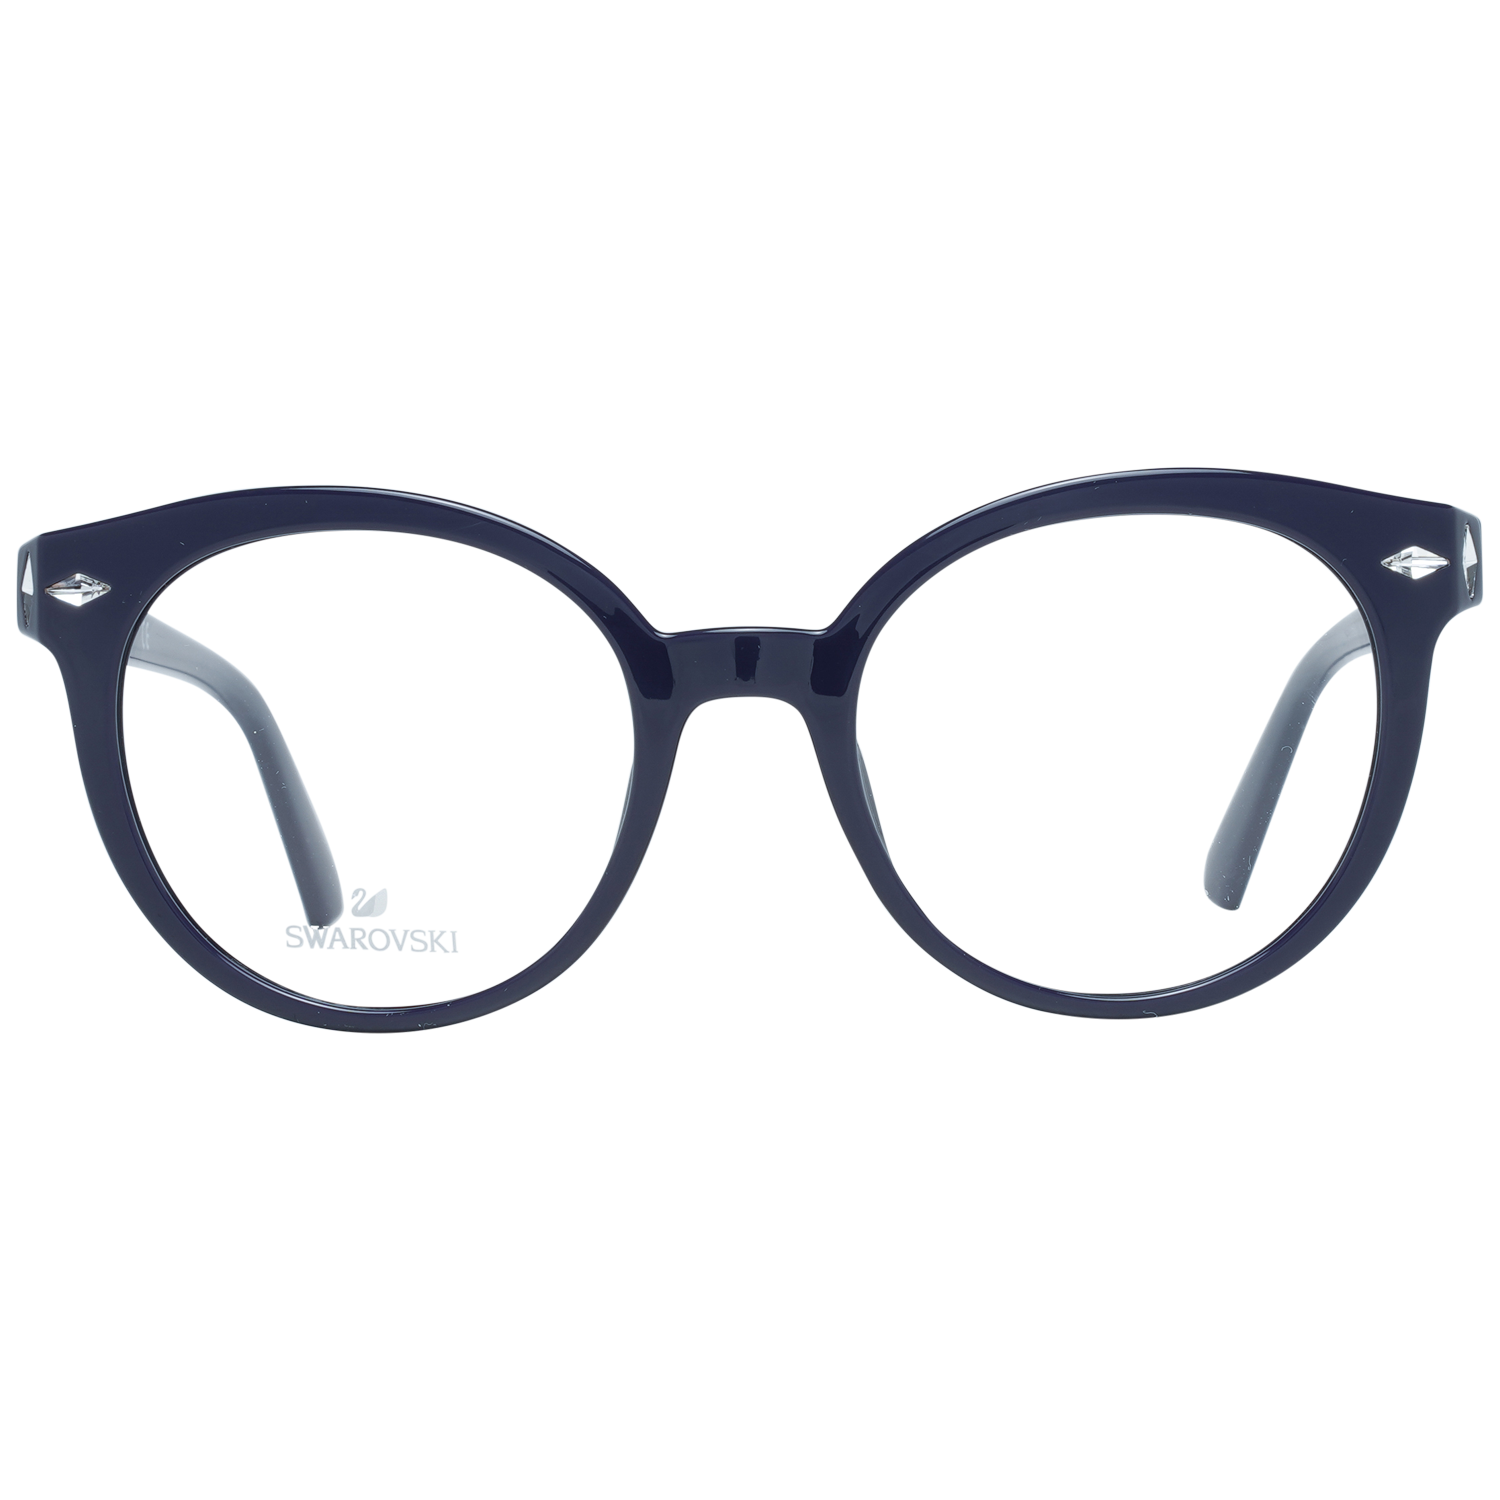 Swarovski Frames Swarovski Women Glasses Optical Frame SK5272 081 50 Eyeglasses Eyewear UK USA Australia 